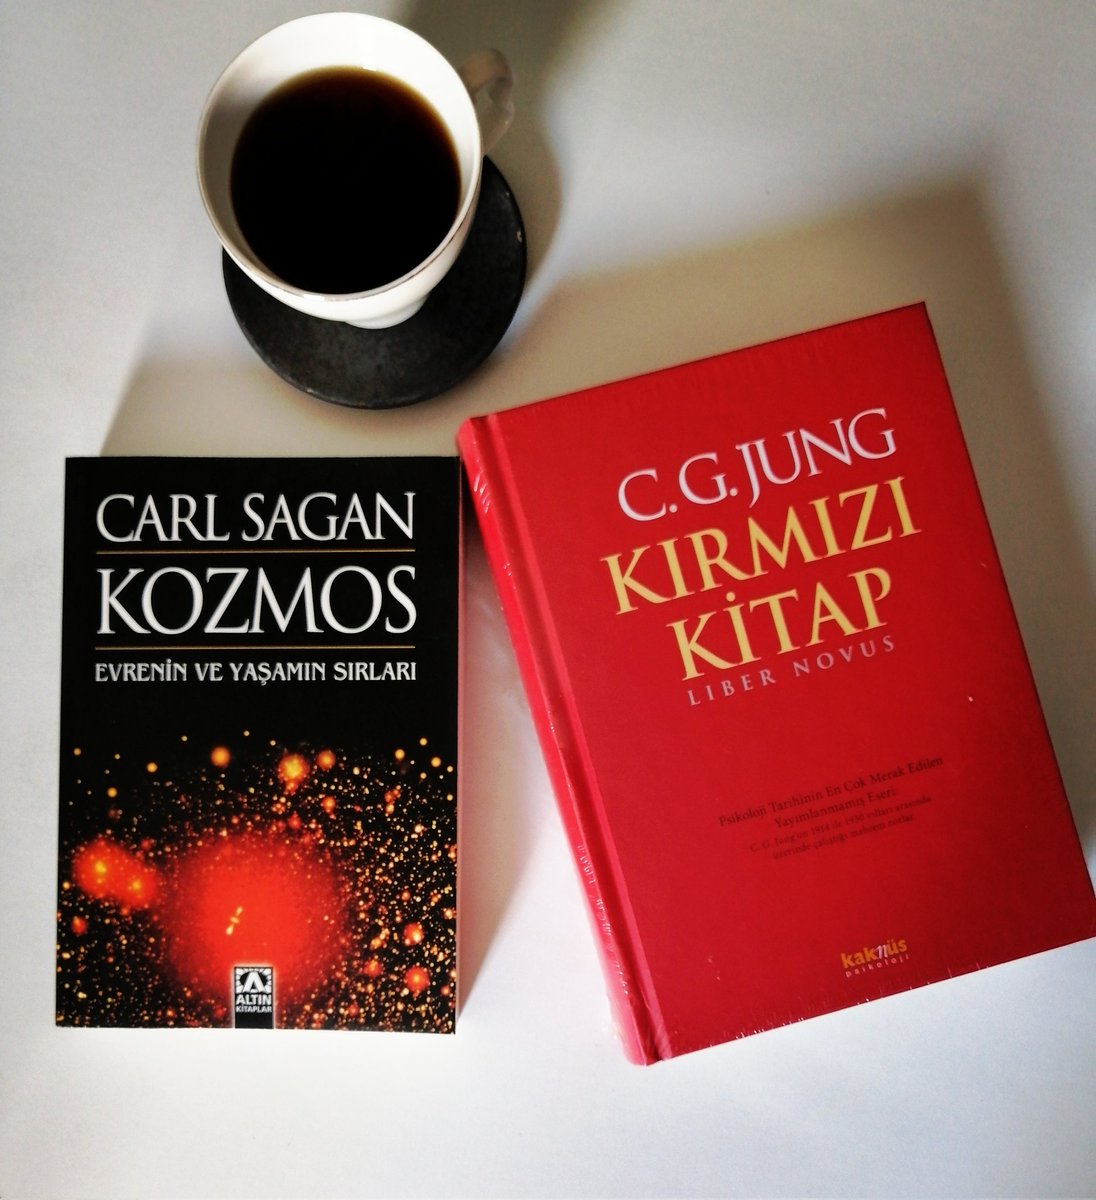 #CarlSagan #Kozmos 📚
#CarlGustavJung #KırmızıKitap 🎀#Yeni #Kitap #Amazon 💯  #Kasım